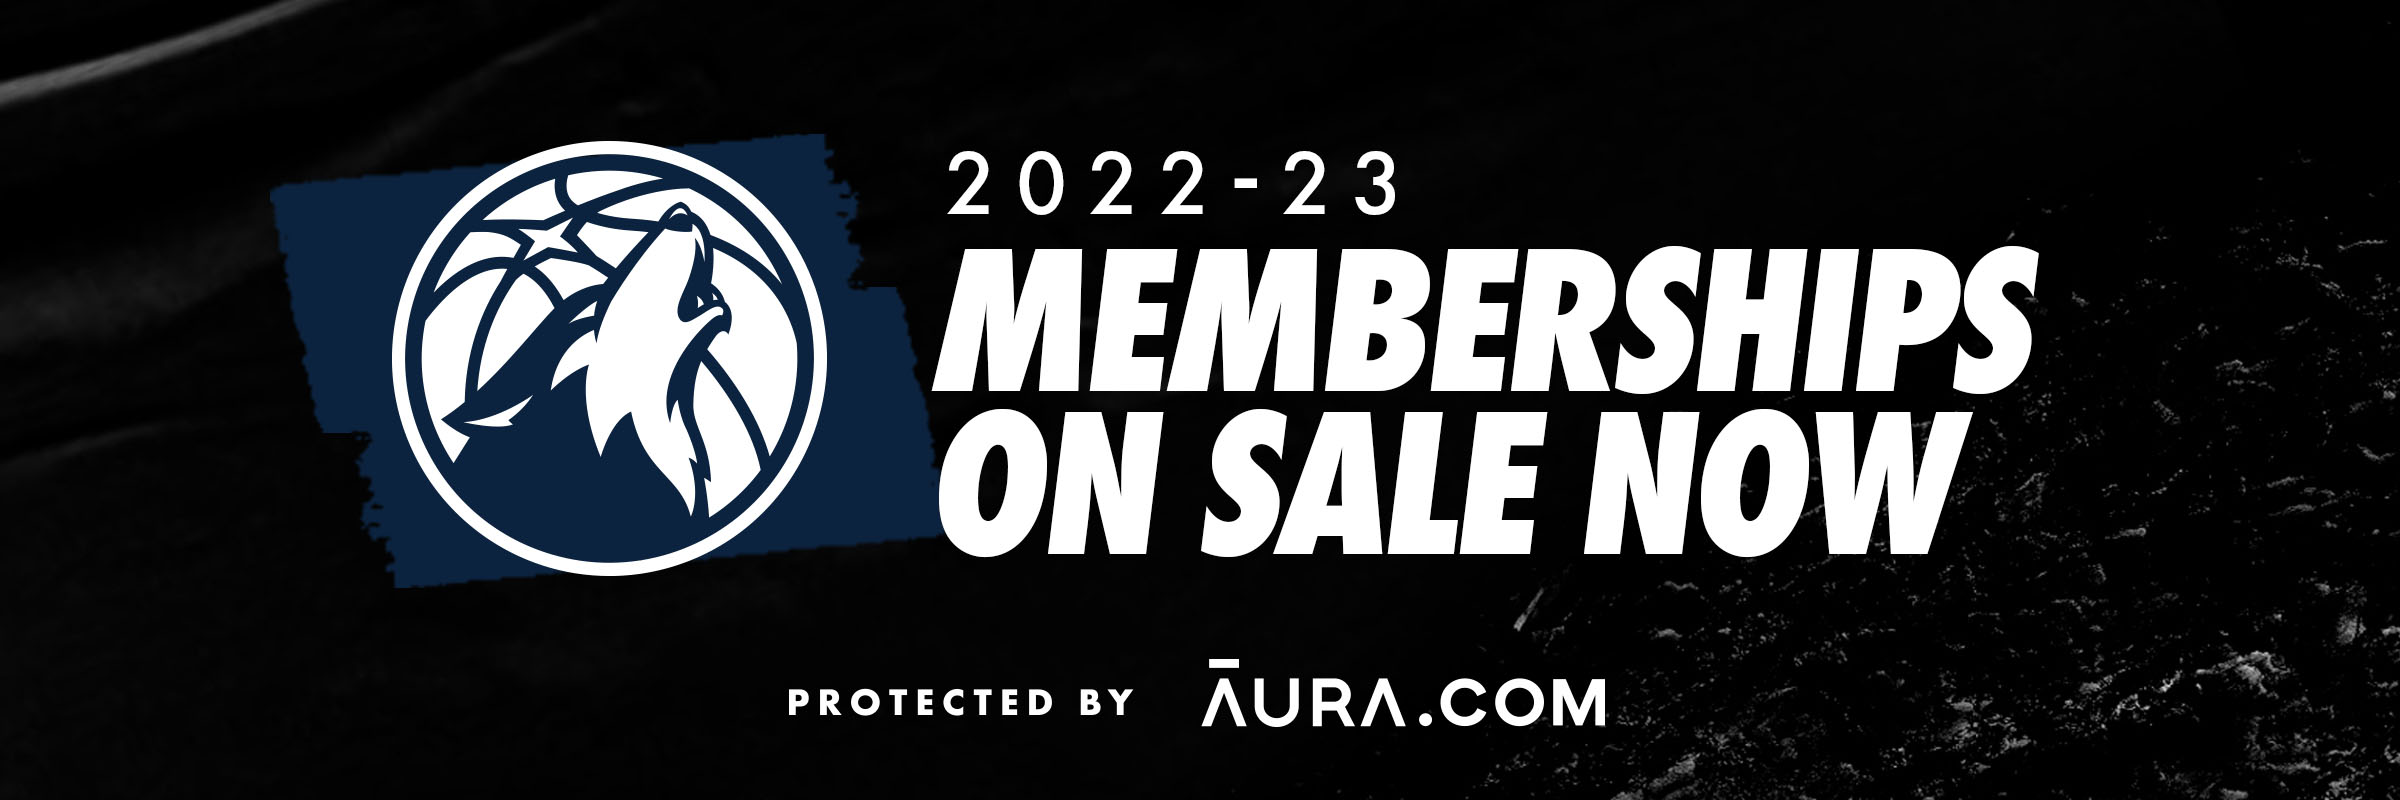 2022-23 Memberships On Sale Now